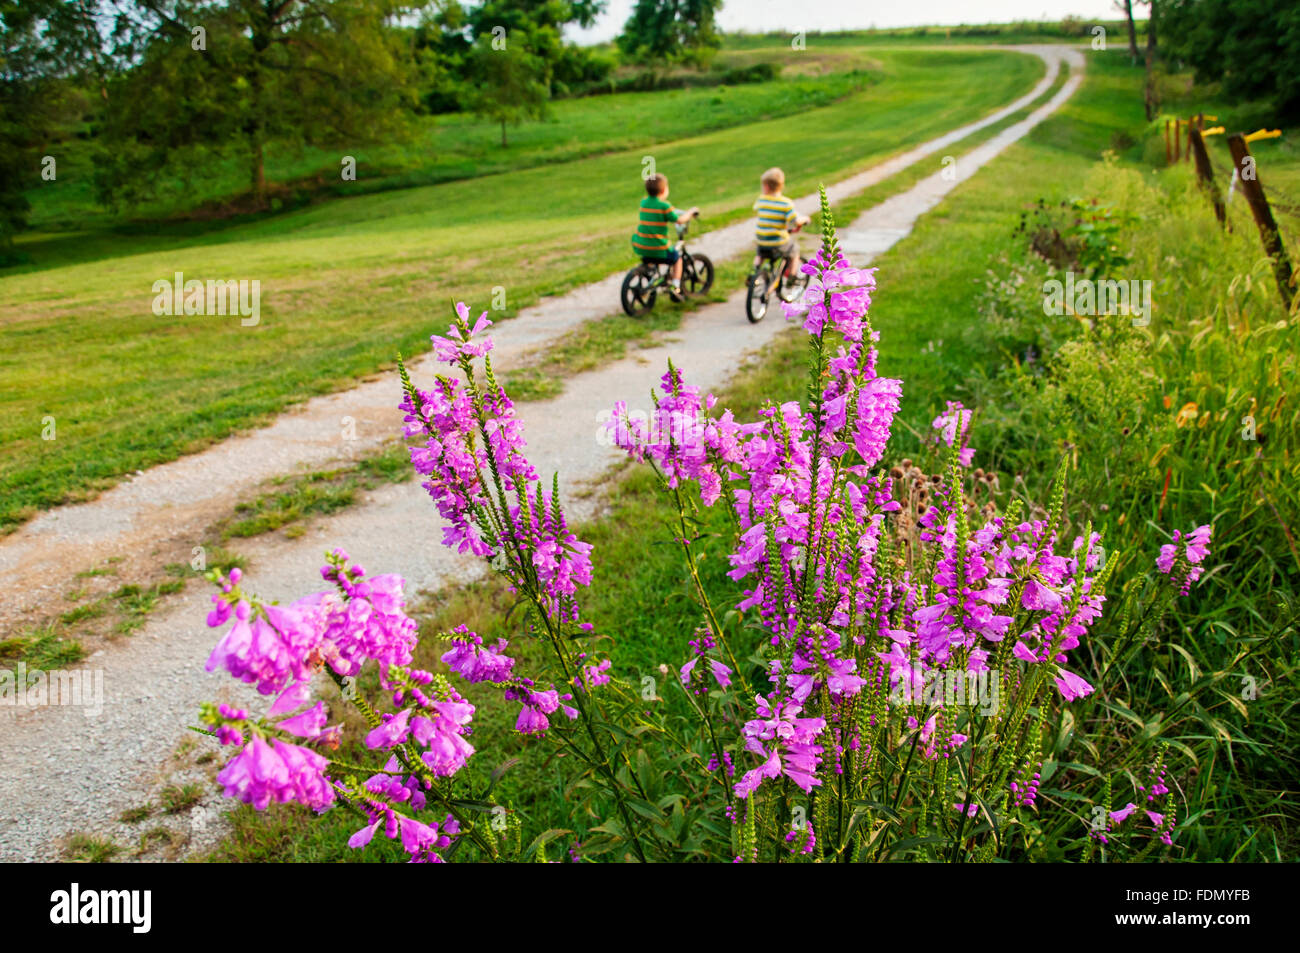 Zwei Kinder Reiten Fahrräder auf Feldweg mit lila Wildblumen im Vordergrund Stockfoto